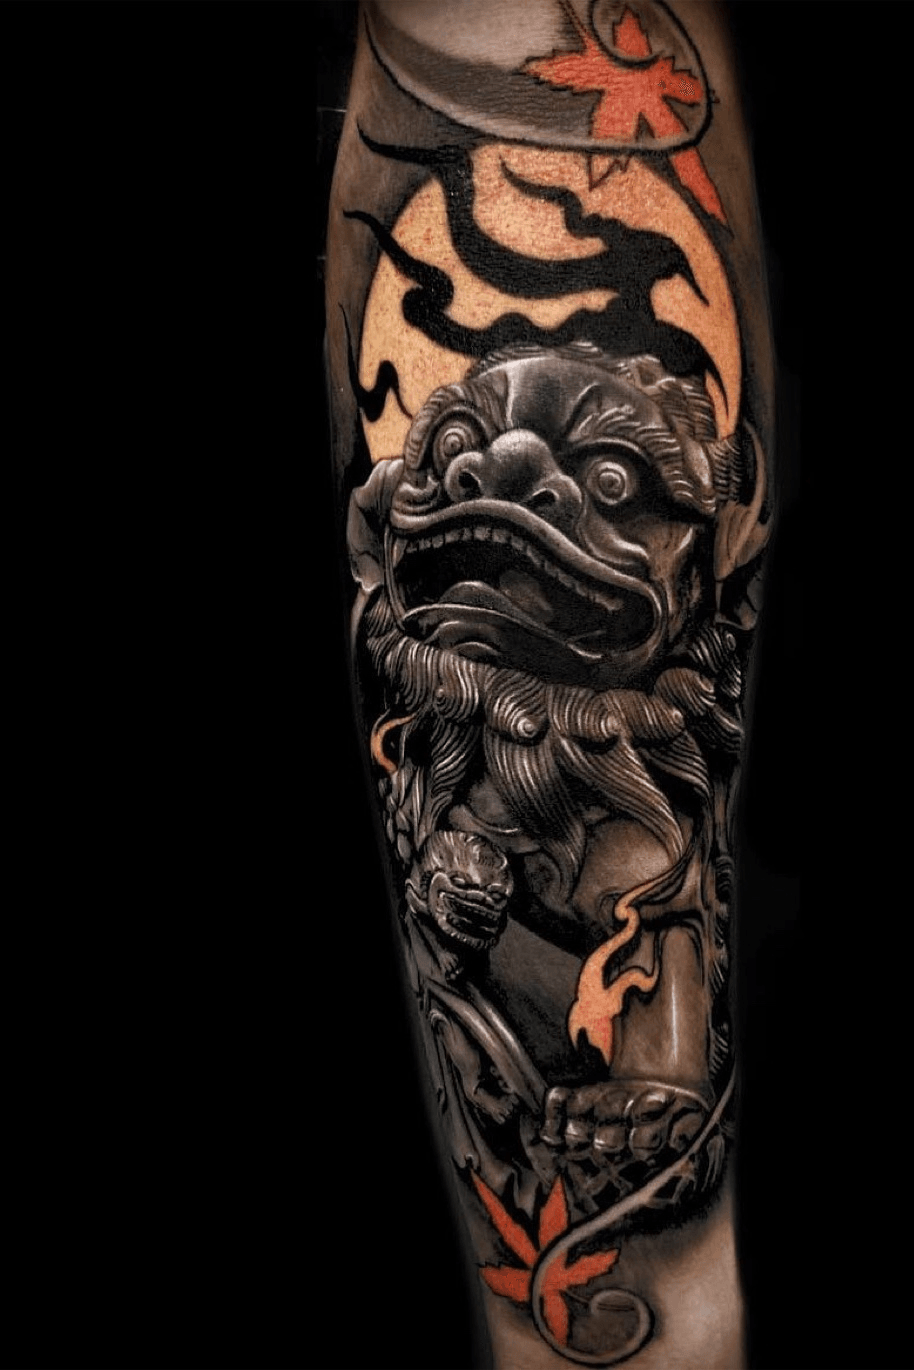 Fechamento de braço  Foo dog tattoo design Japanese forearm tattoo  Sleeve tattoos